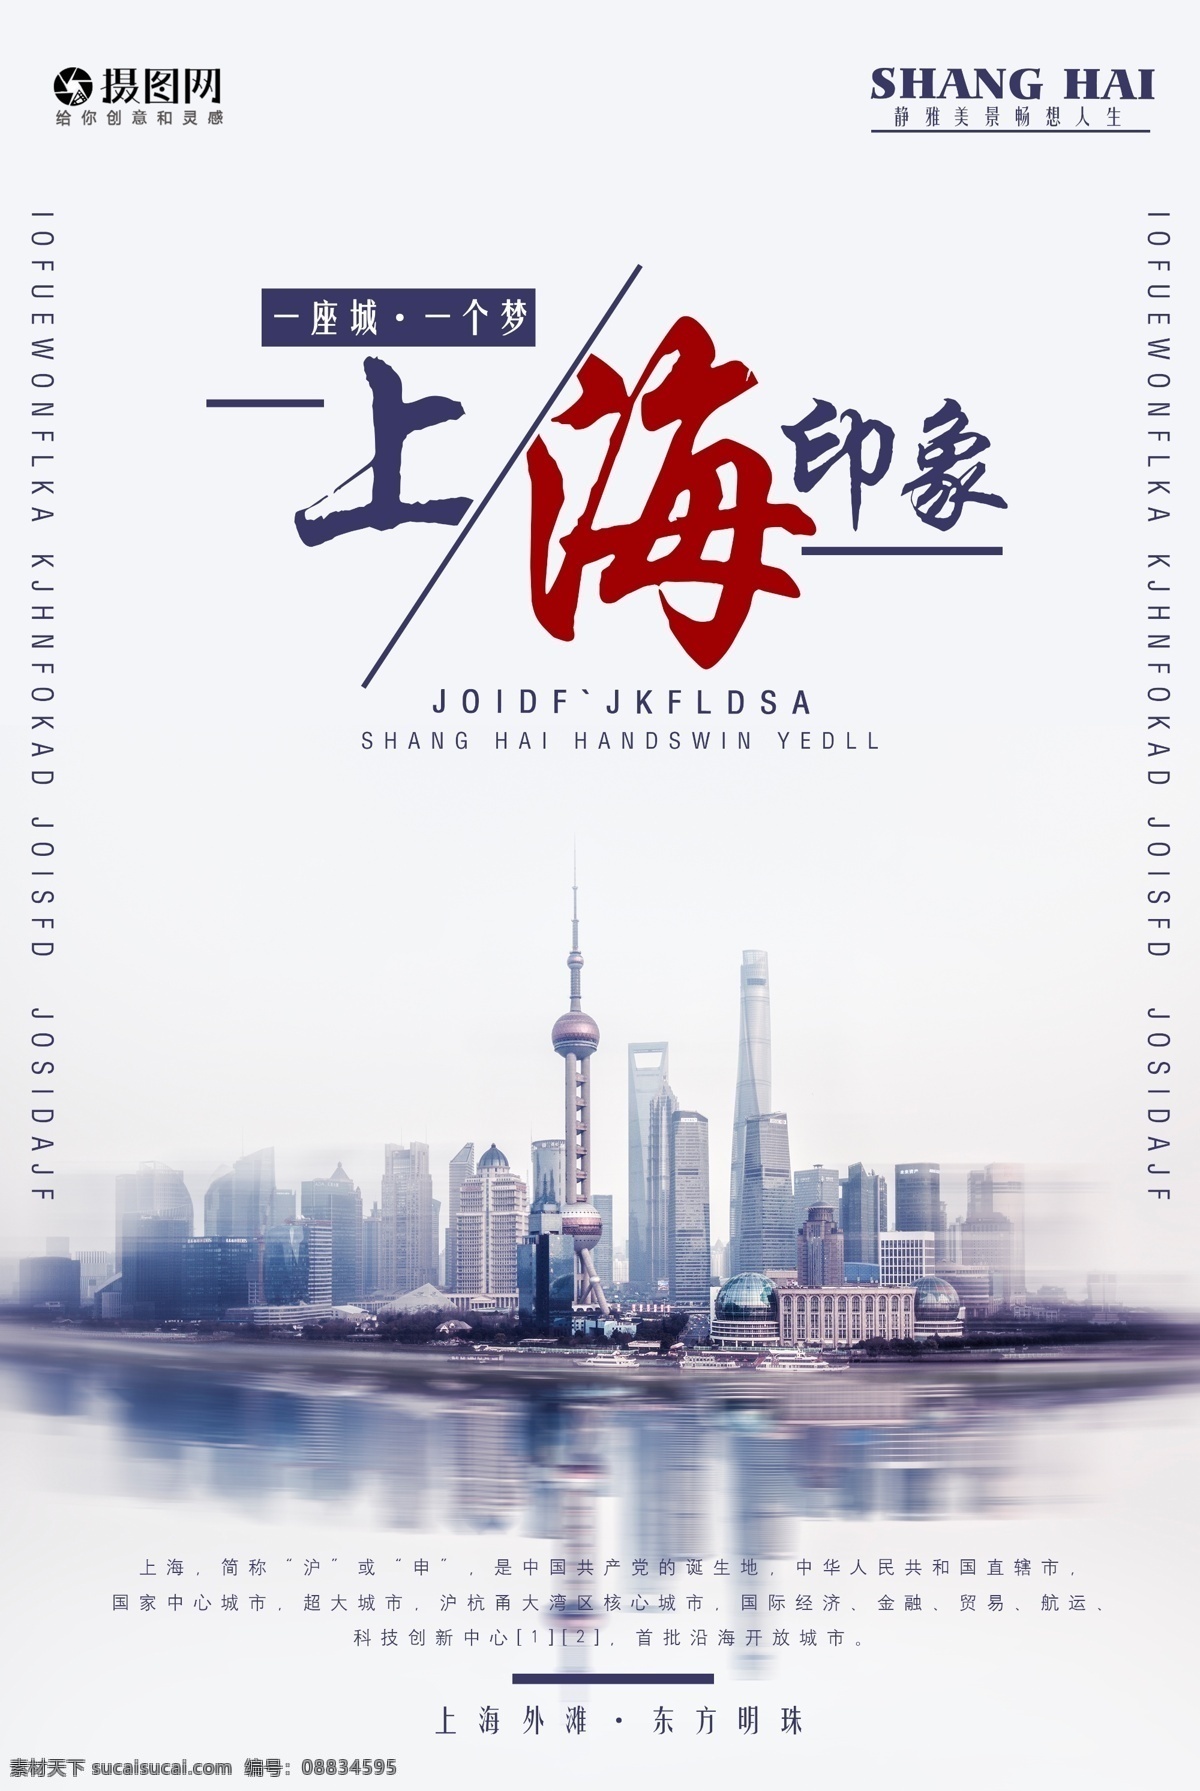 上海 印象 旅游 宣传海报 外滩 梦想 东方之珠 明珠 一座城 旅行 著名景点 旅游宣传海报